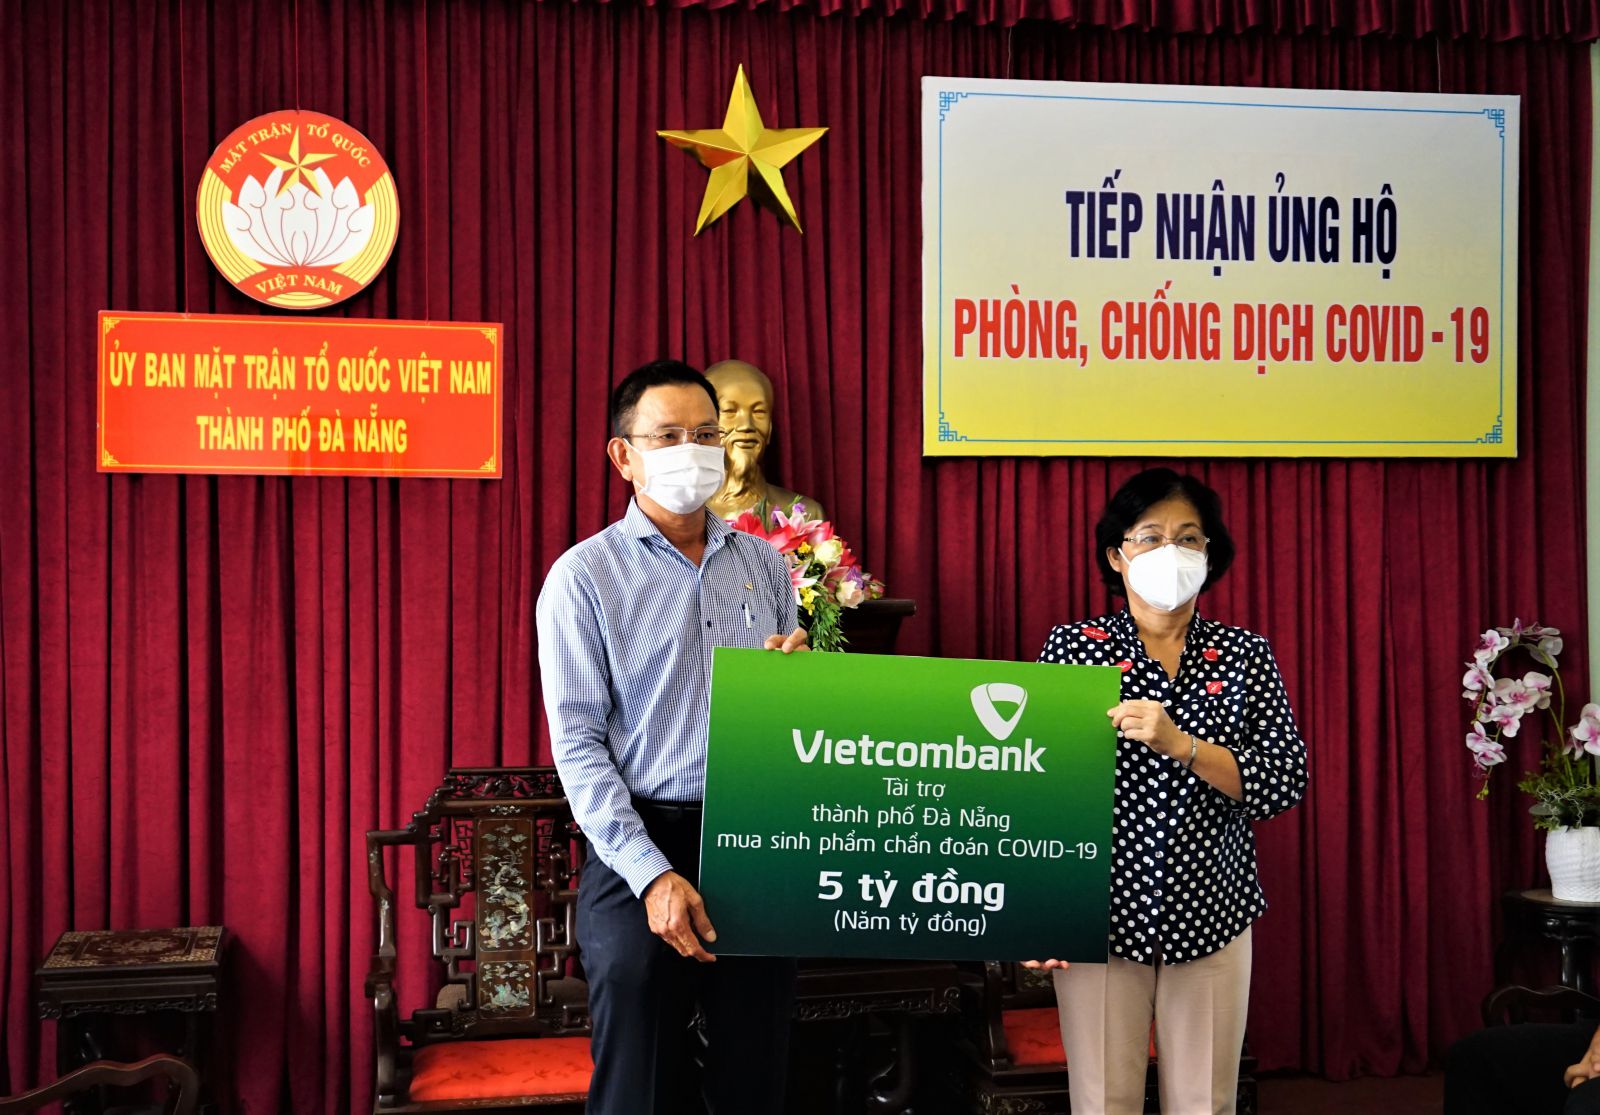 Đại diện Vietcombank, ông Nguyễn Quang Việt – Giám đốc Vietcombank Đà Nẵng trao tặng số tiền 5 tỷ đồng hỗ trợ thành phố Đà Nẵng mua sinh phẩm chẩn đoán COVID -19